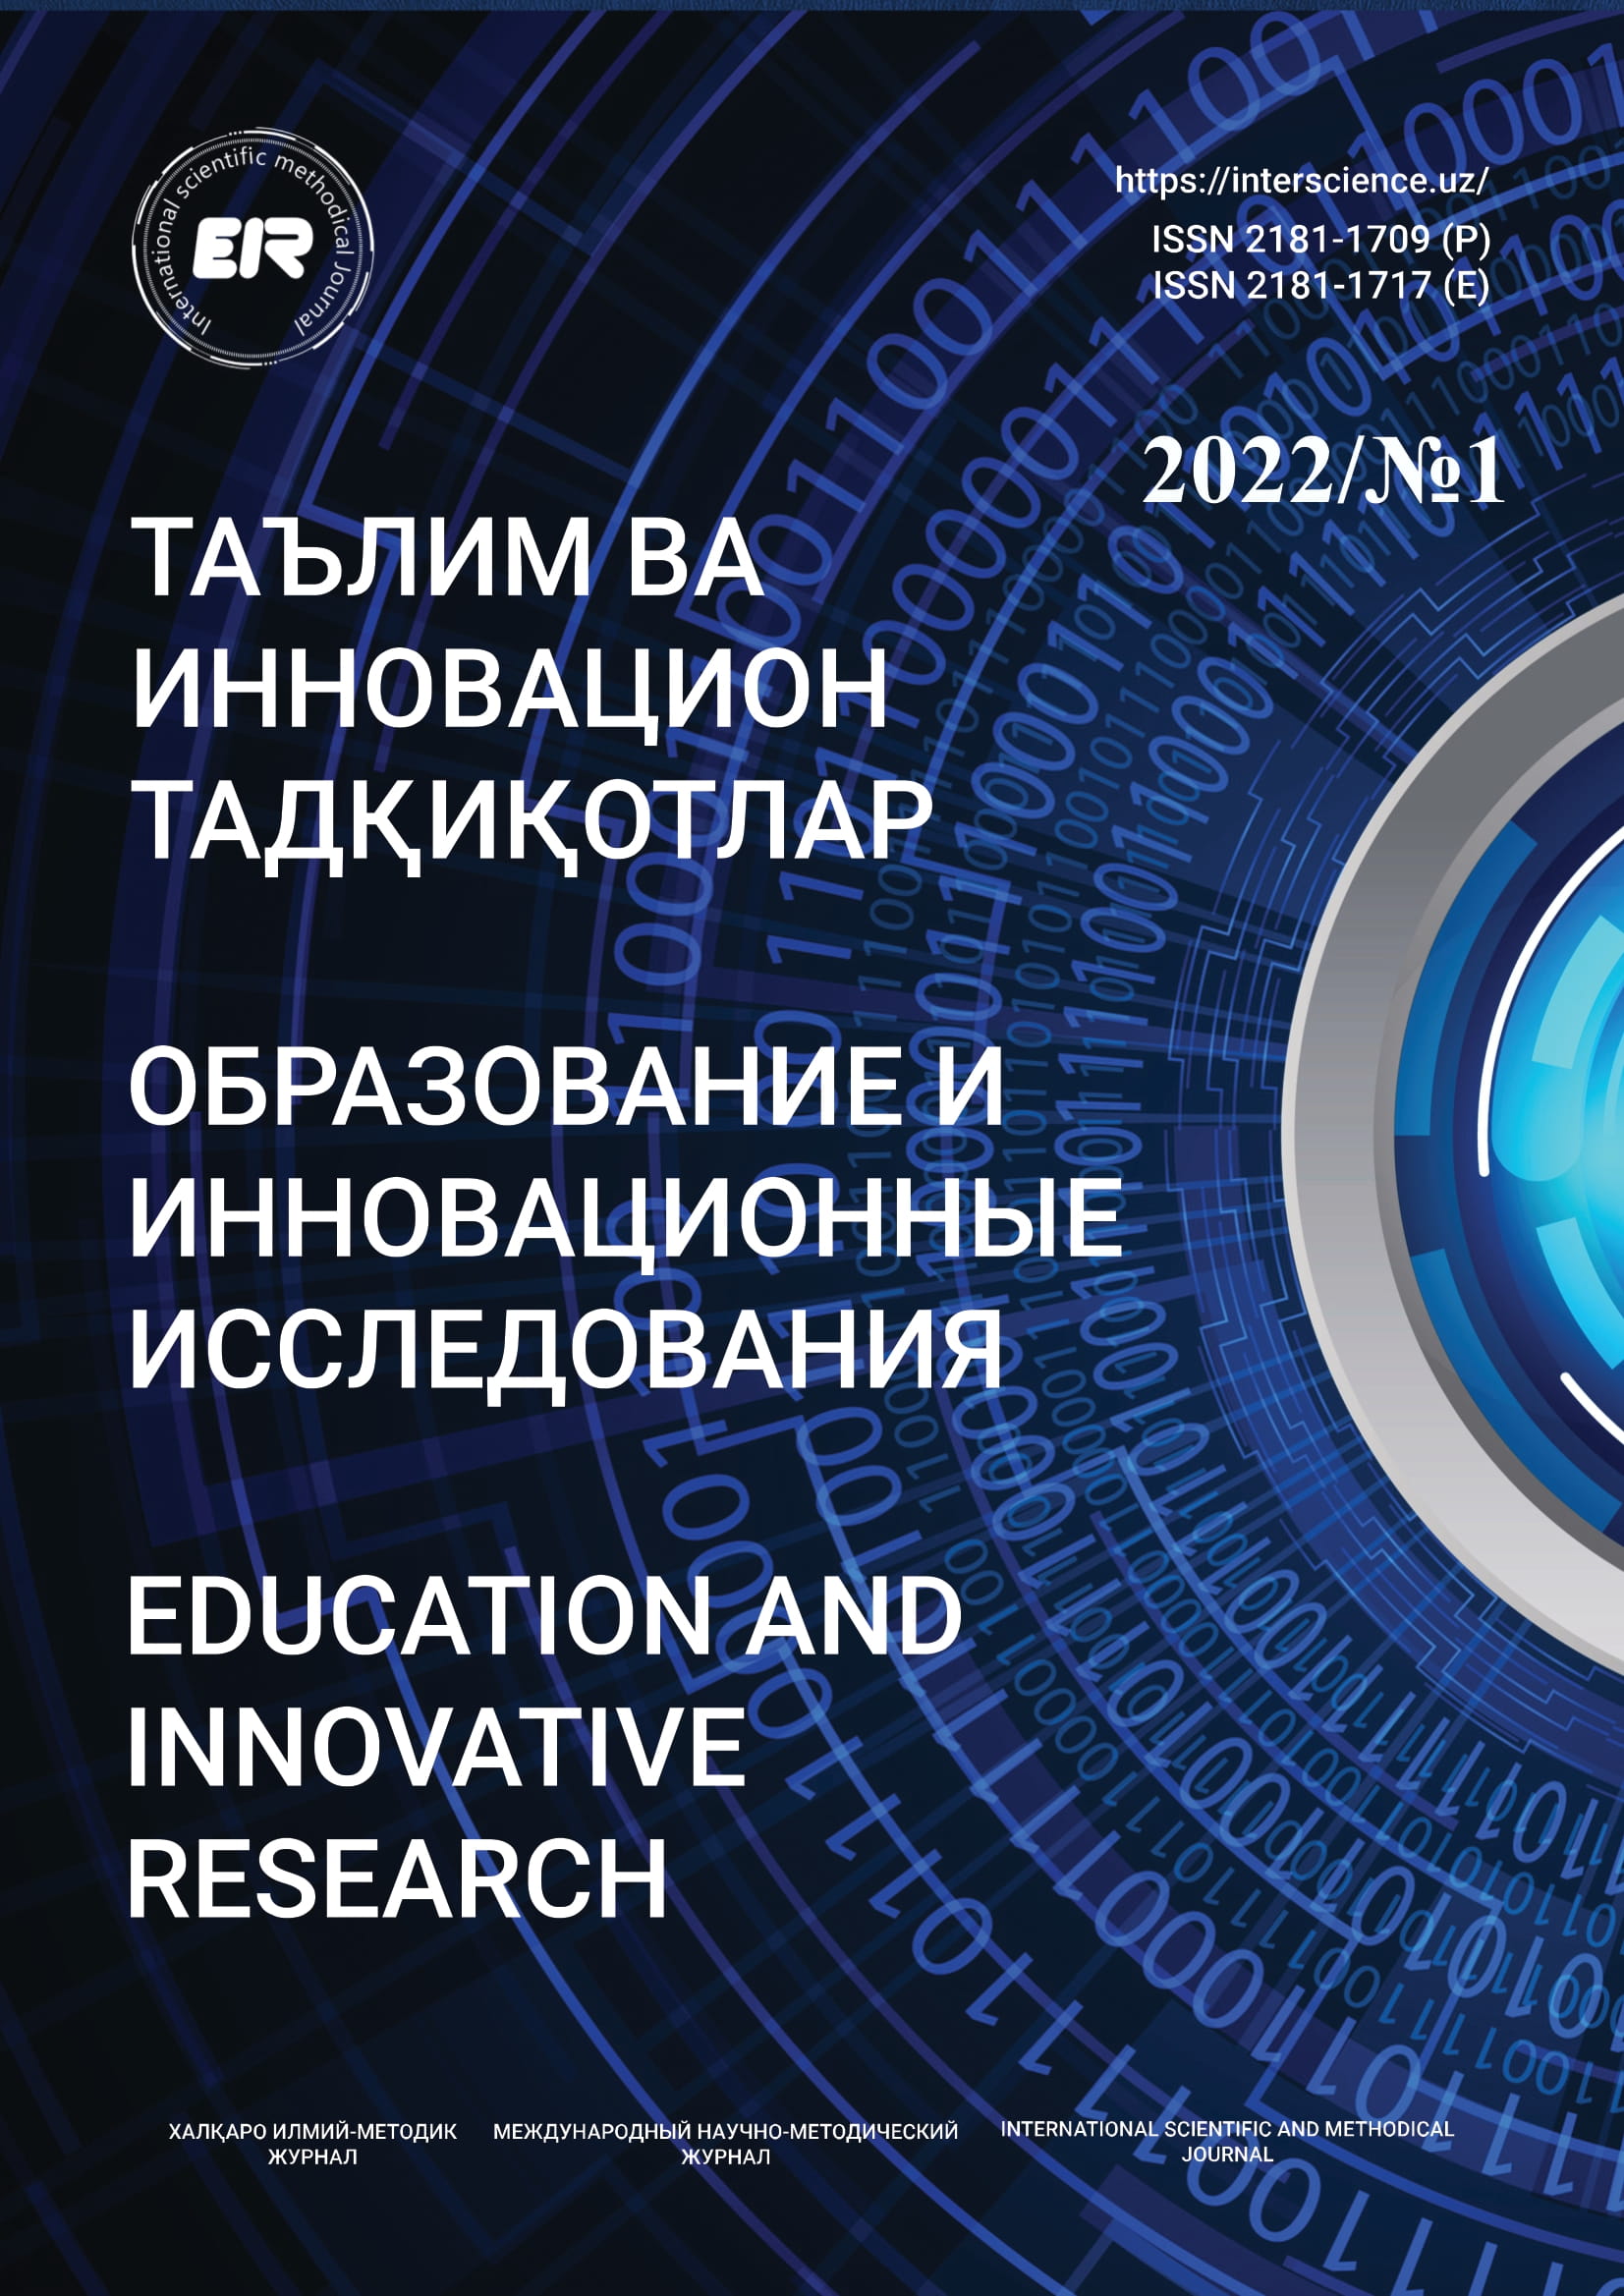 					Показать № 1 (2022): Образование и инновационные исследования
				